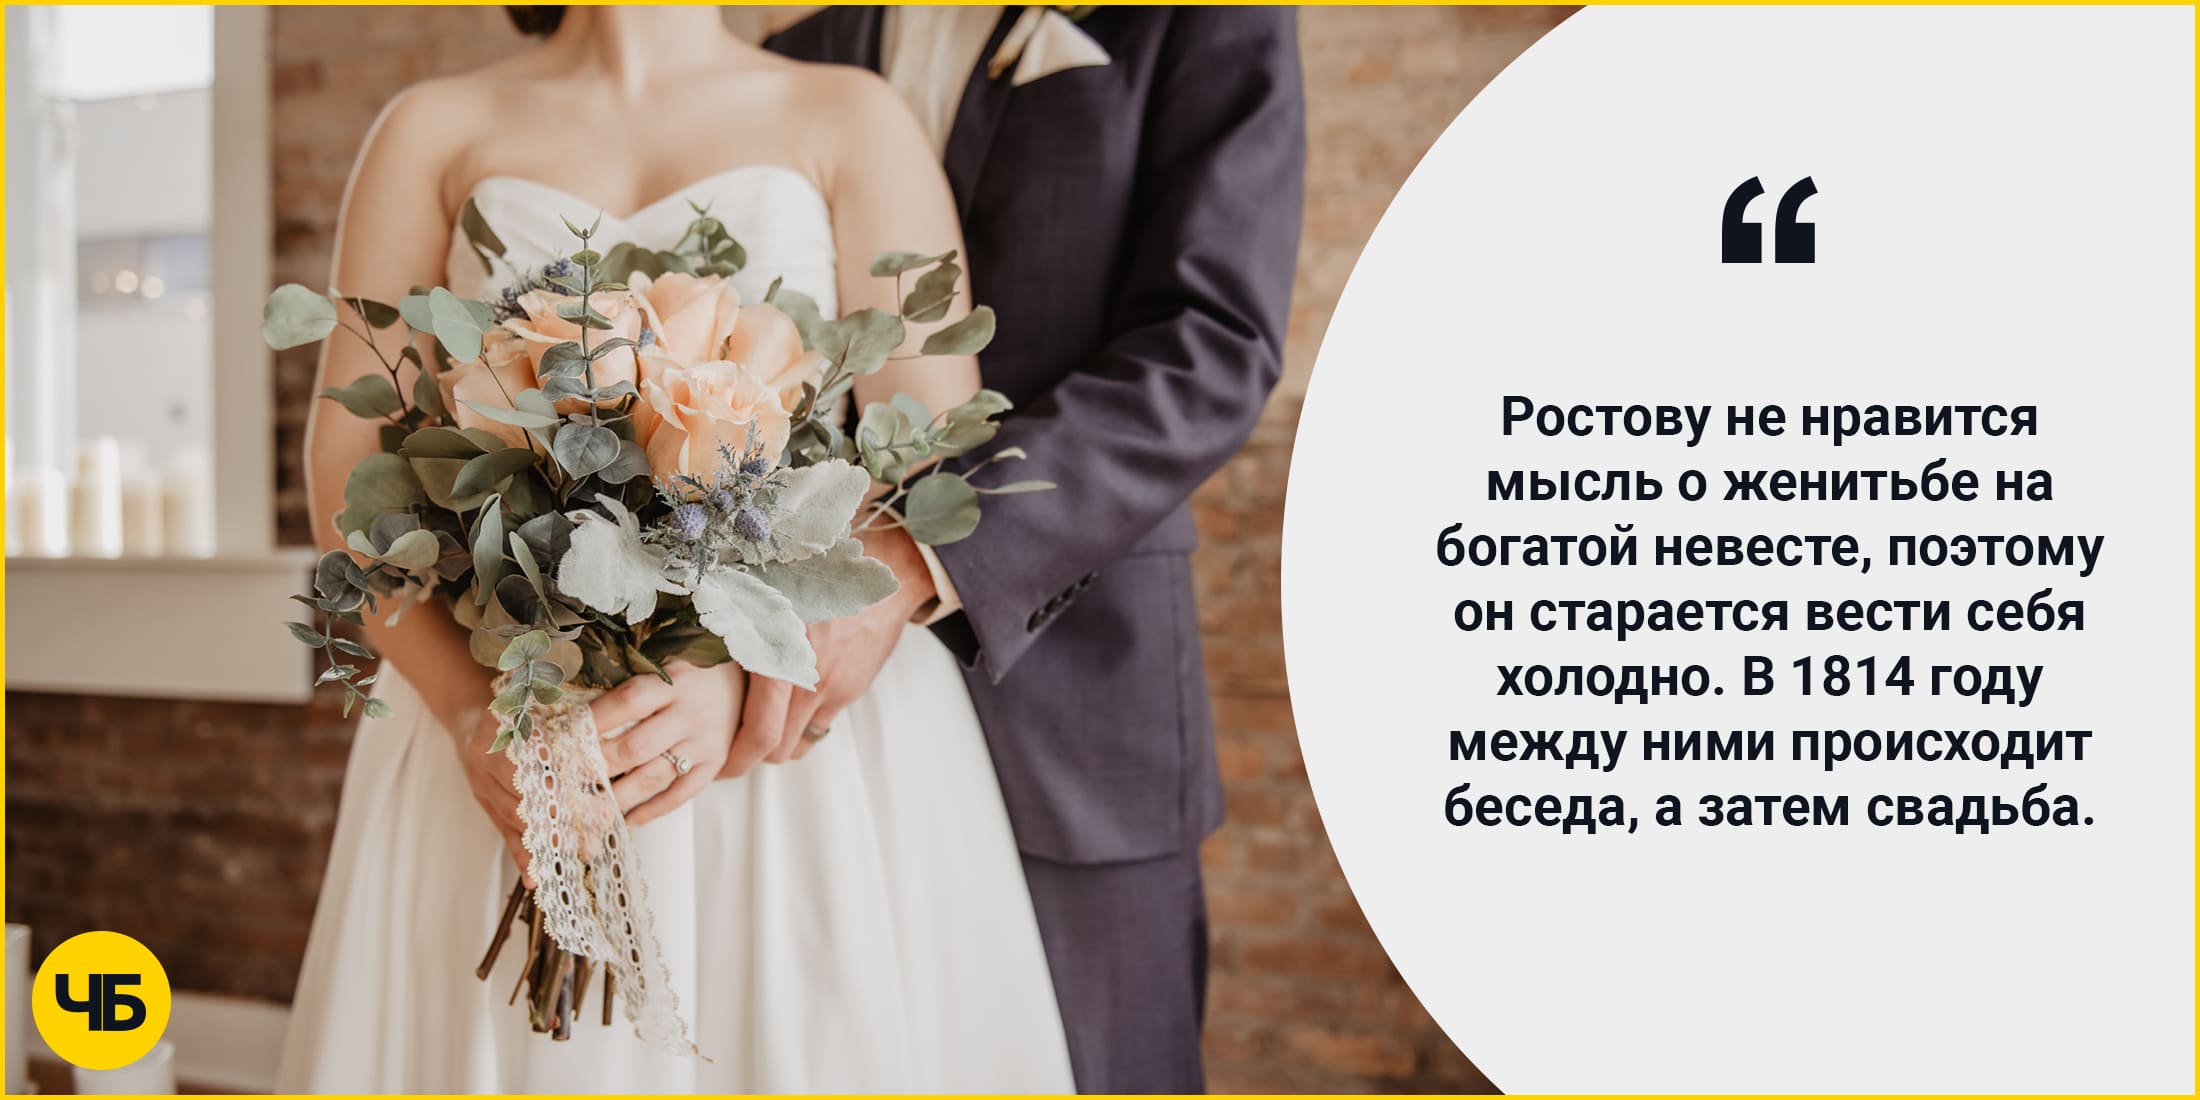 Там он встречает Марью Болконскую. Ростову не нравится мысль о женитьбе на богатой невесте, поэтому он старается вести себя холодно. В 1814 году между ними происходит беседа, а затем свадьба.